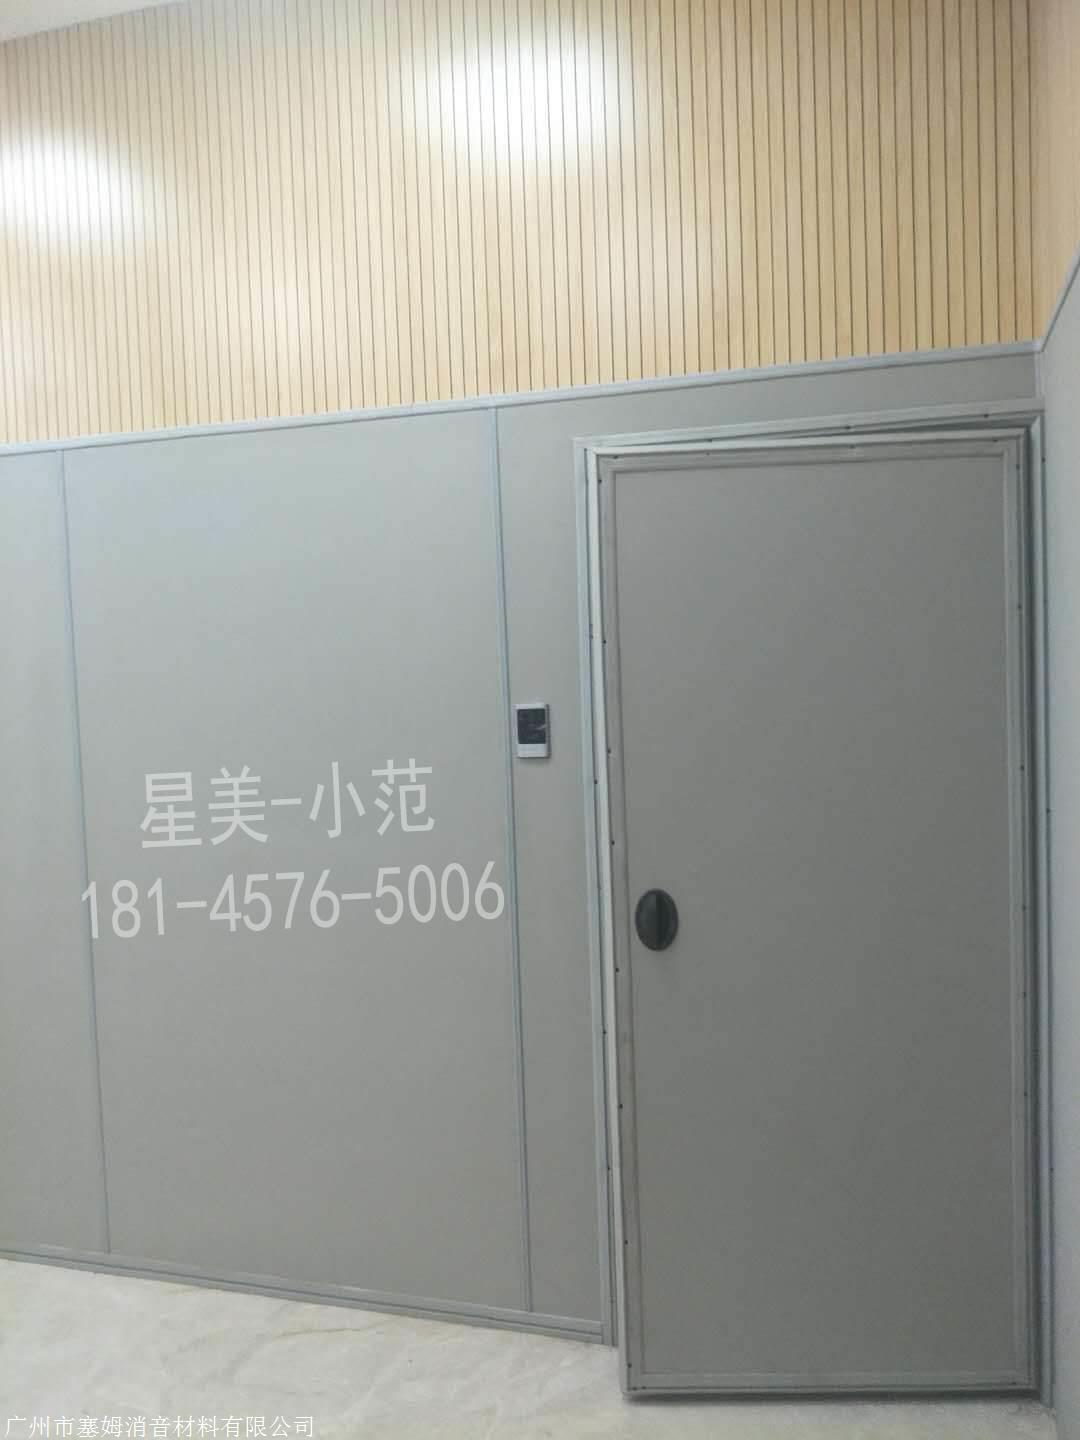 雍州审讯室新型防撞软包 功能齐全贴心选择